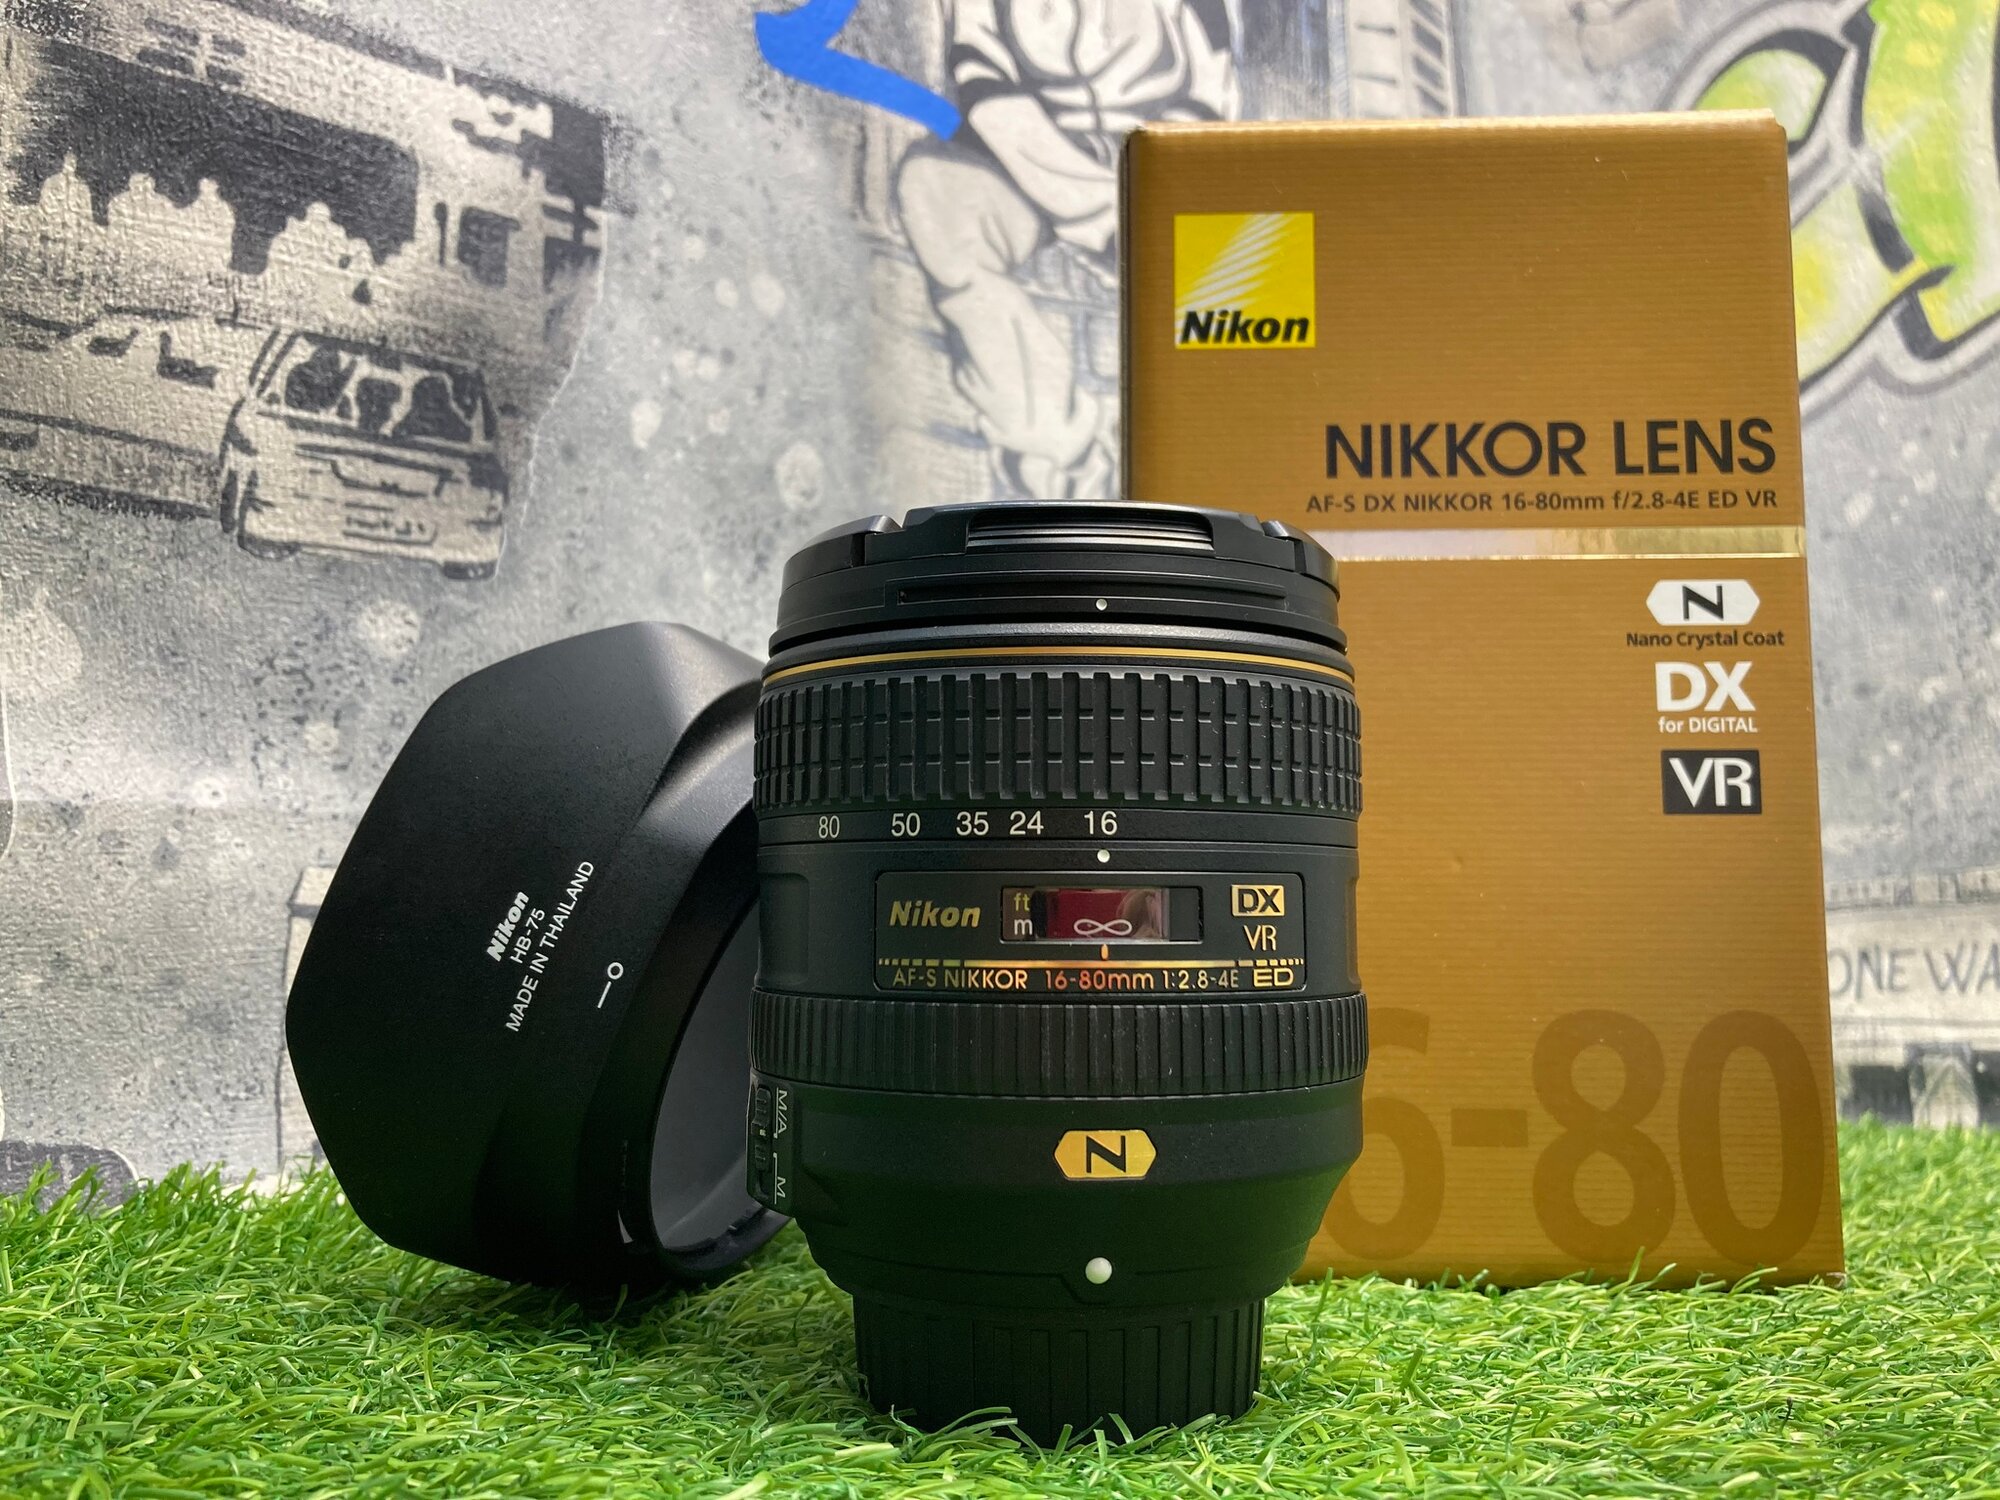 Nikon 16-80mm 2.8-4E ED VR AF-S DX Nikkor